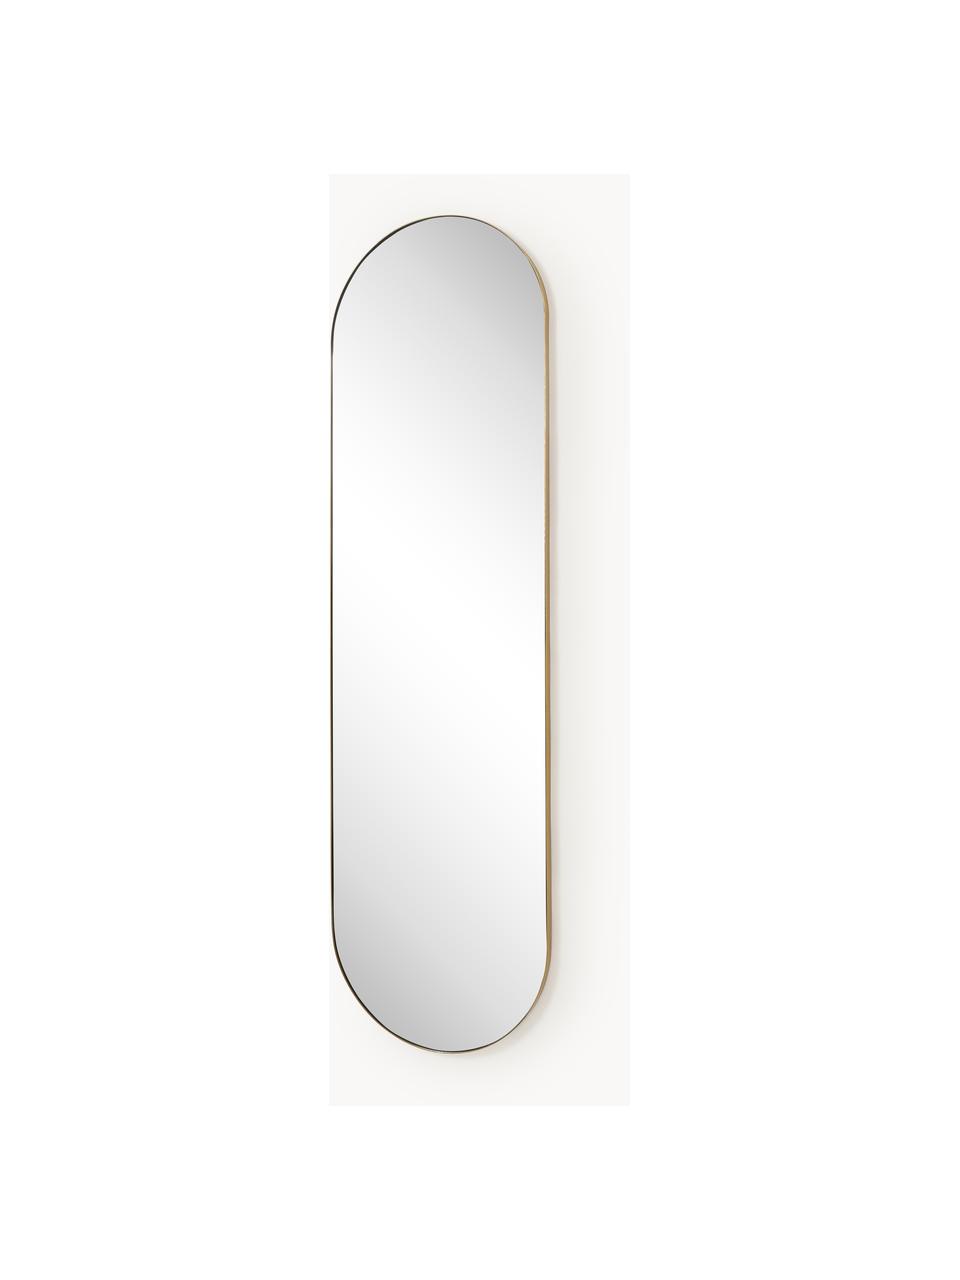 Ovaler Wandspiegel Lucia, Rahmen: Metall, Spiegelfläche: Spiegelglas, Rückseite: Mitteldichte Holzfaserpla, Goldfarben, B 40 x H 140 cm